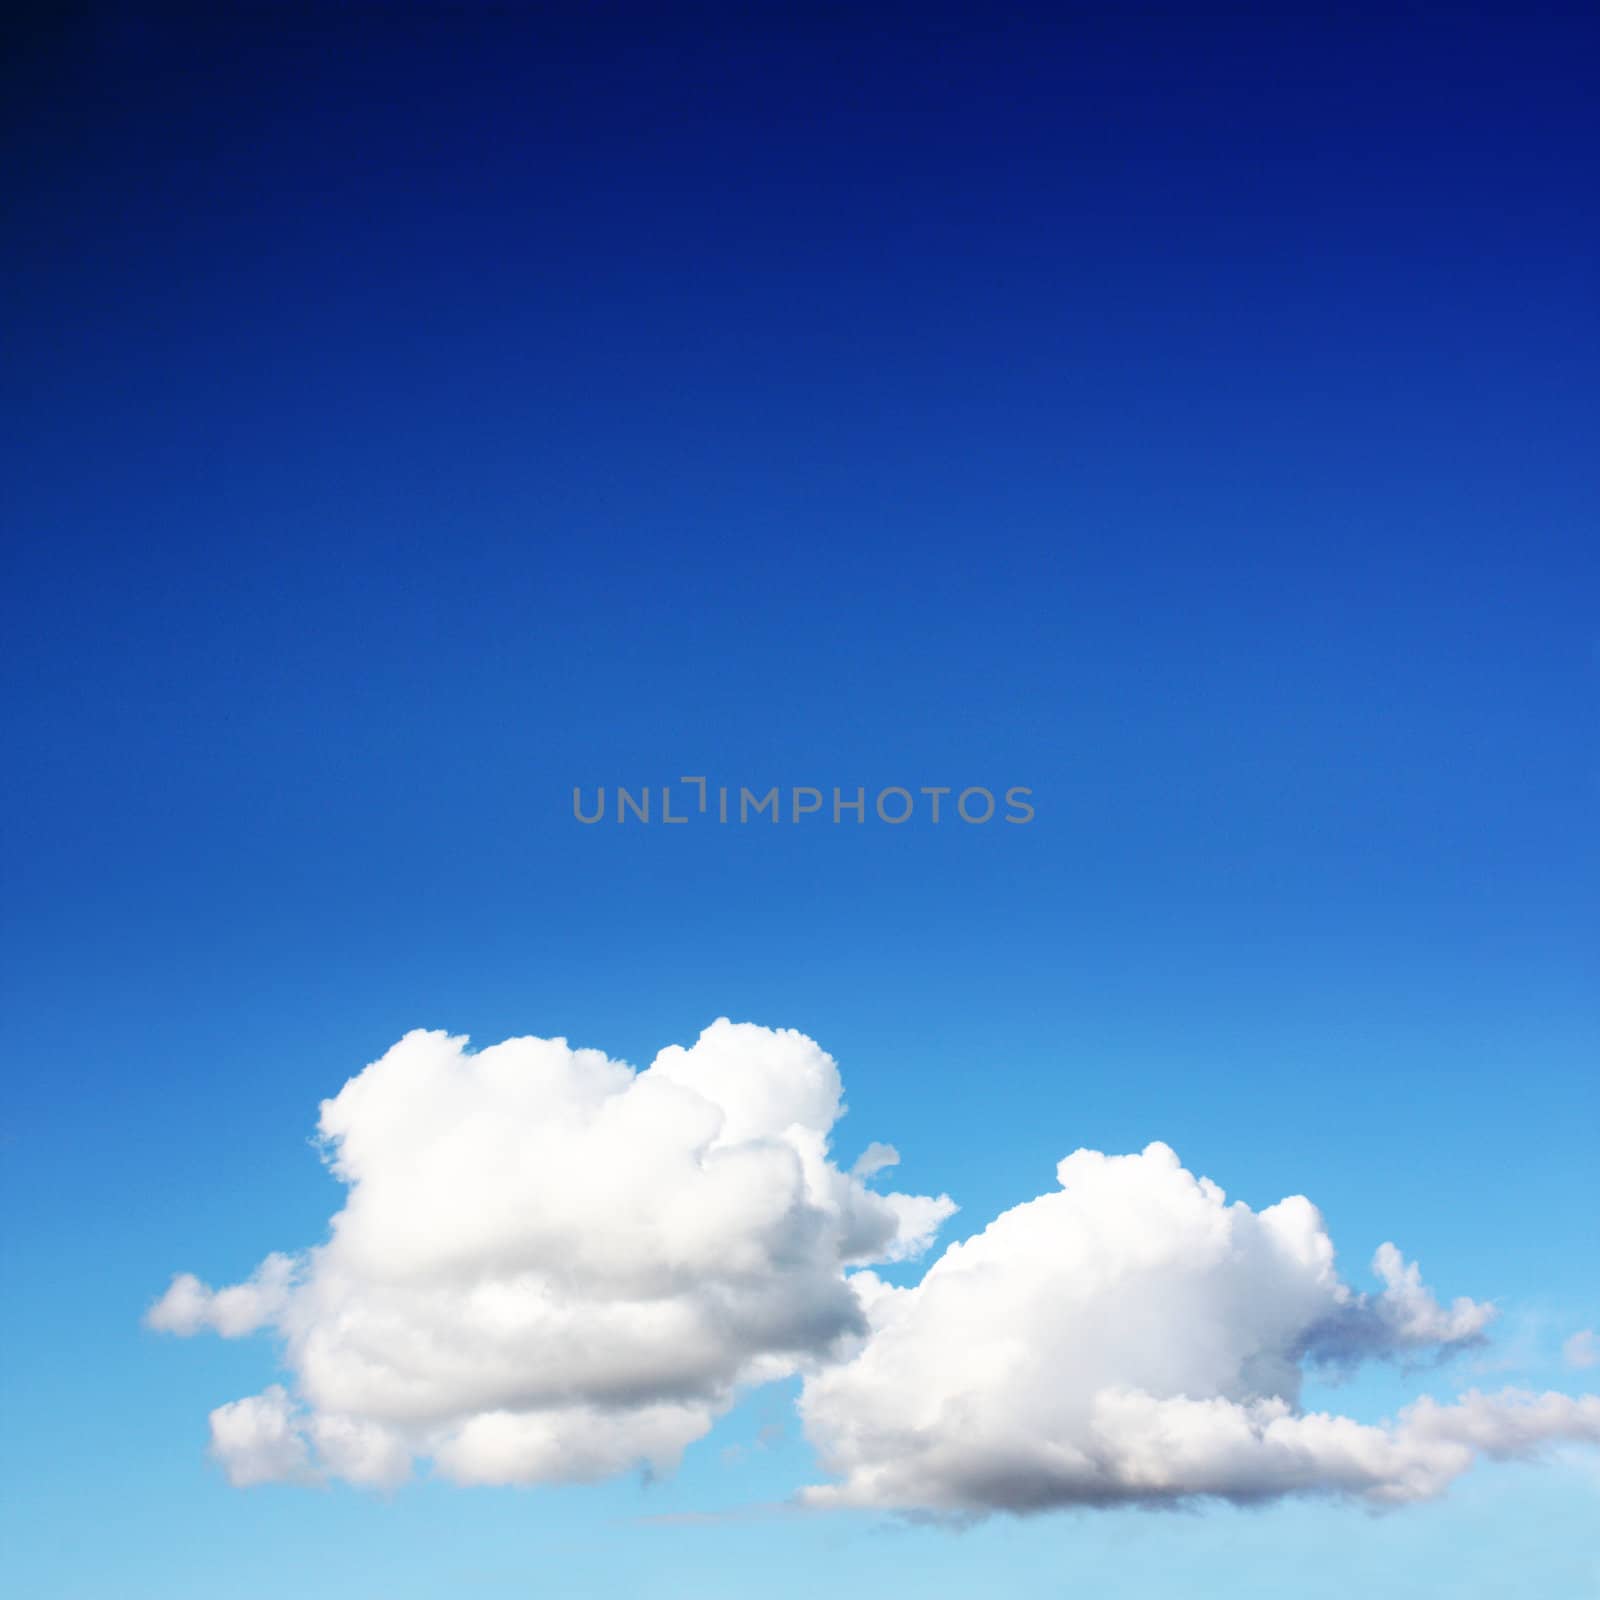 pretty clouds on blue sky by photochecker